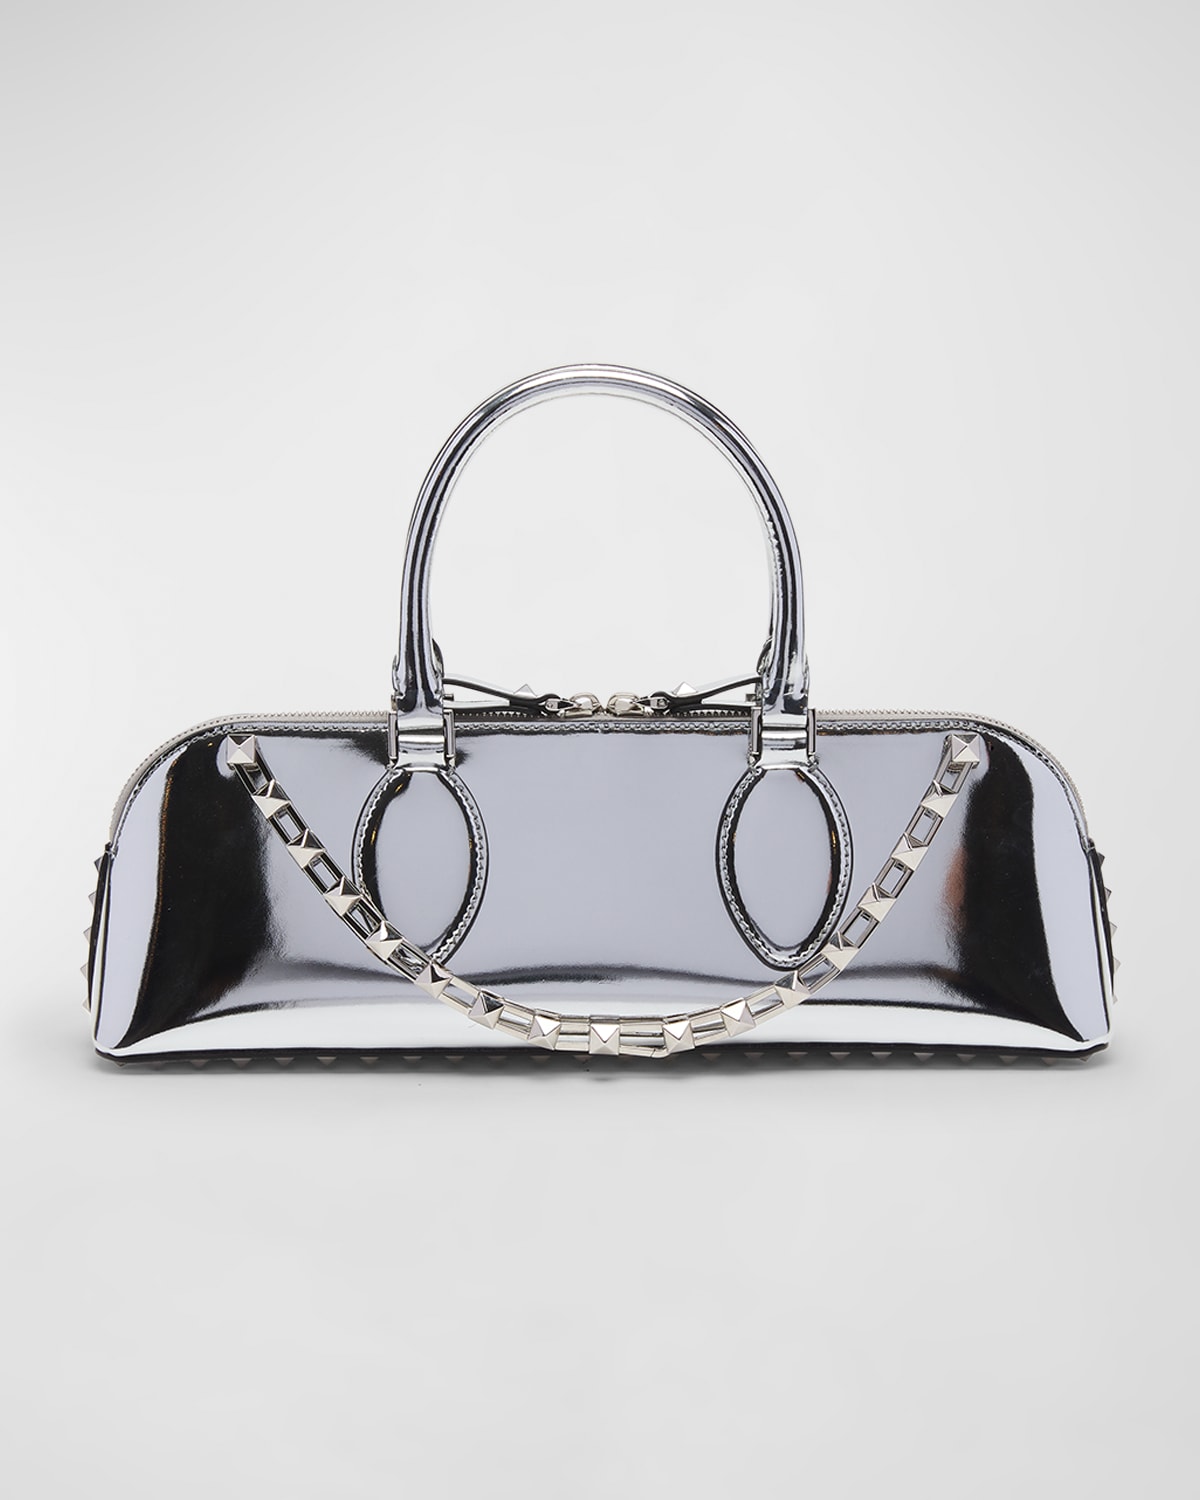 Valentino Garavani Rockstud East-west Metallic Zip Top-handle Bag